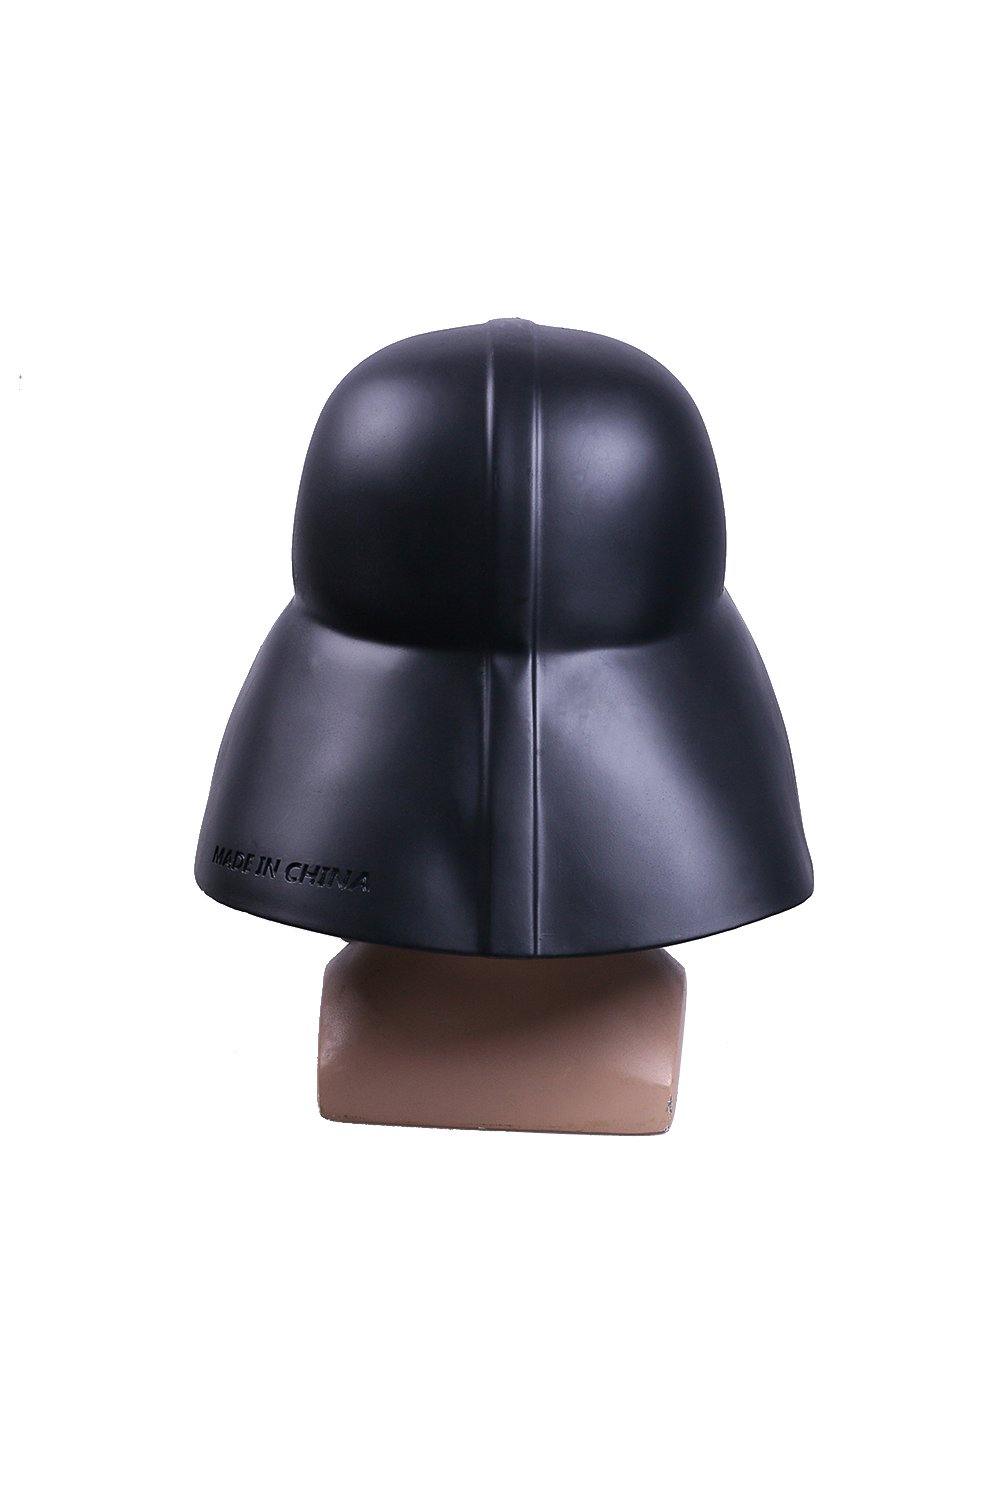 Star wars Darth Vader Cosplay Kopfbedeckung Helm Cosplay Requisite - cosplaycartde